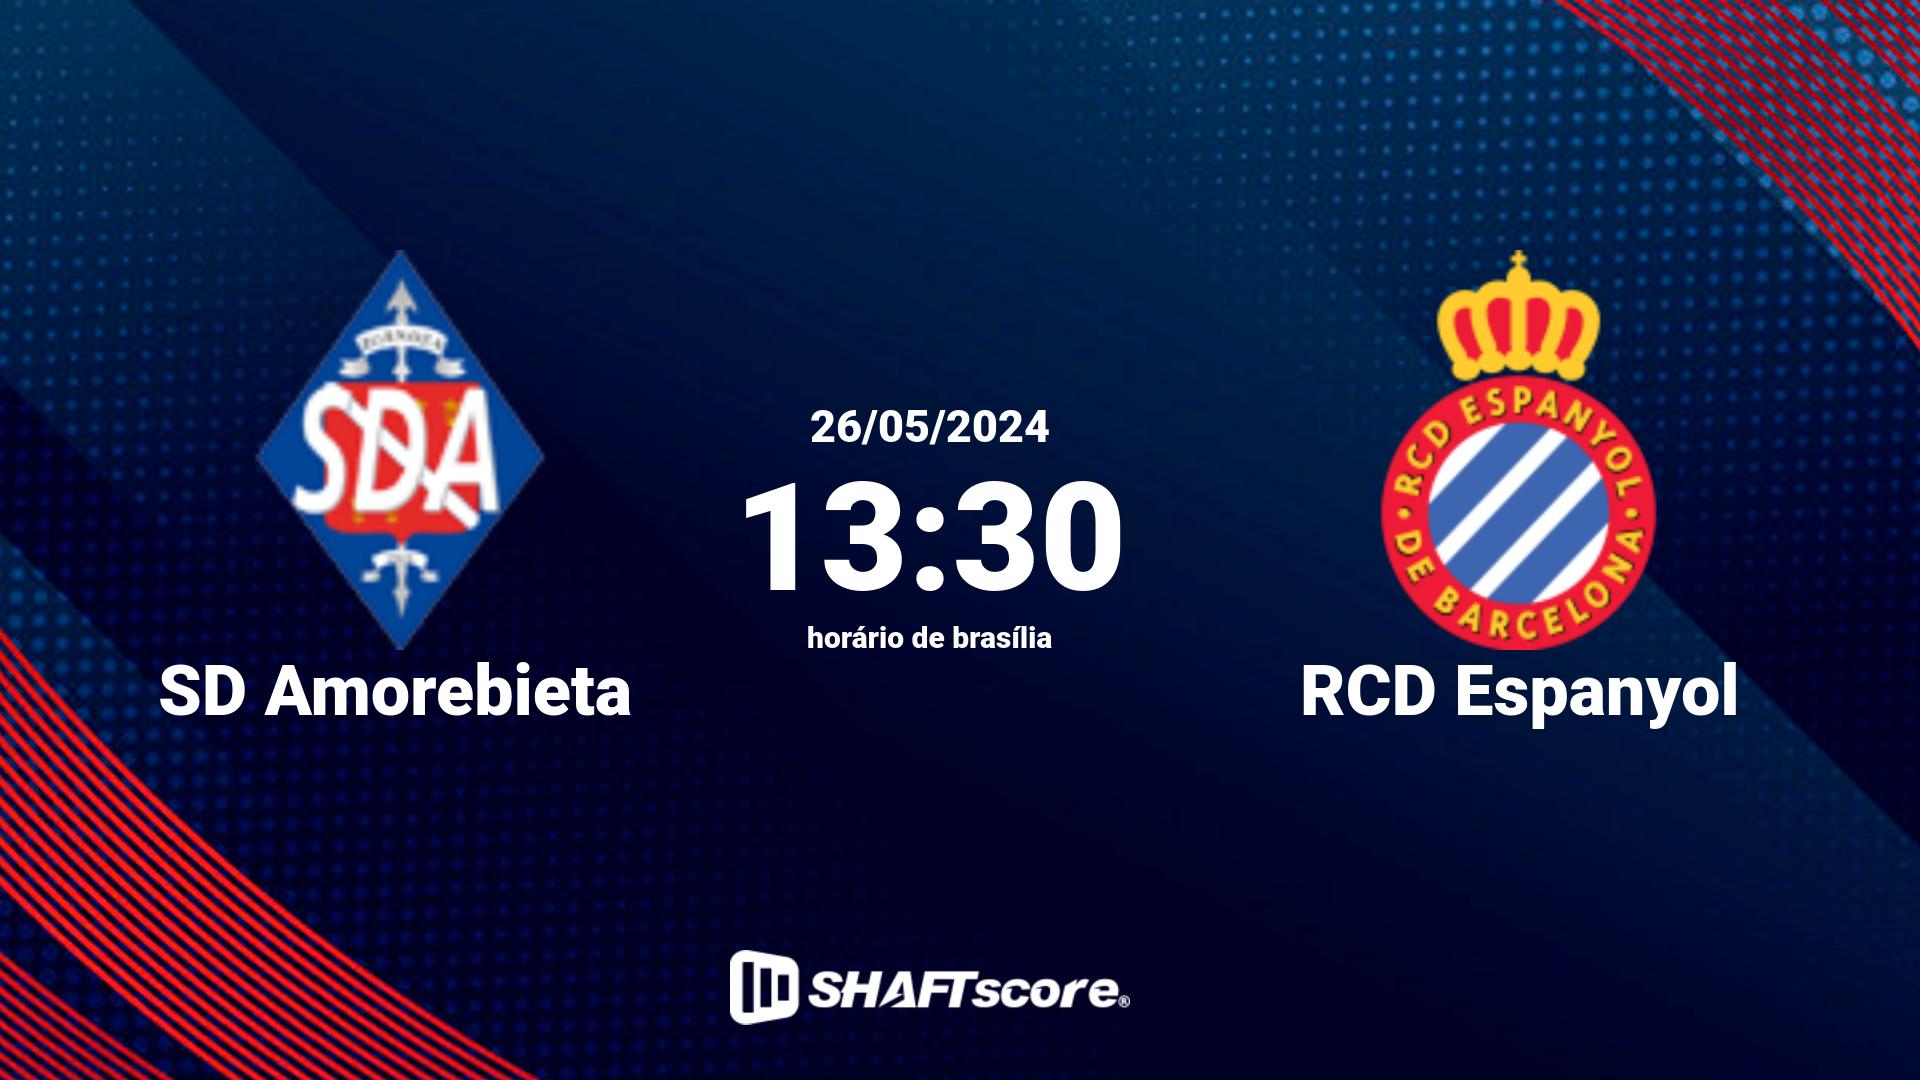 Estatísticas do jogo SD Amorebieta vs RCD Espanyol 26.05 13:30